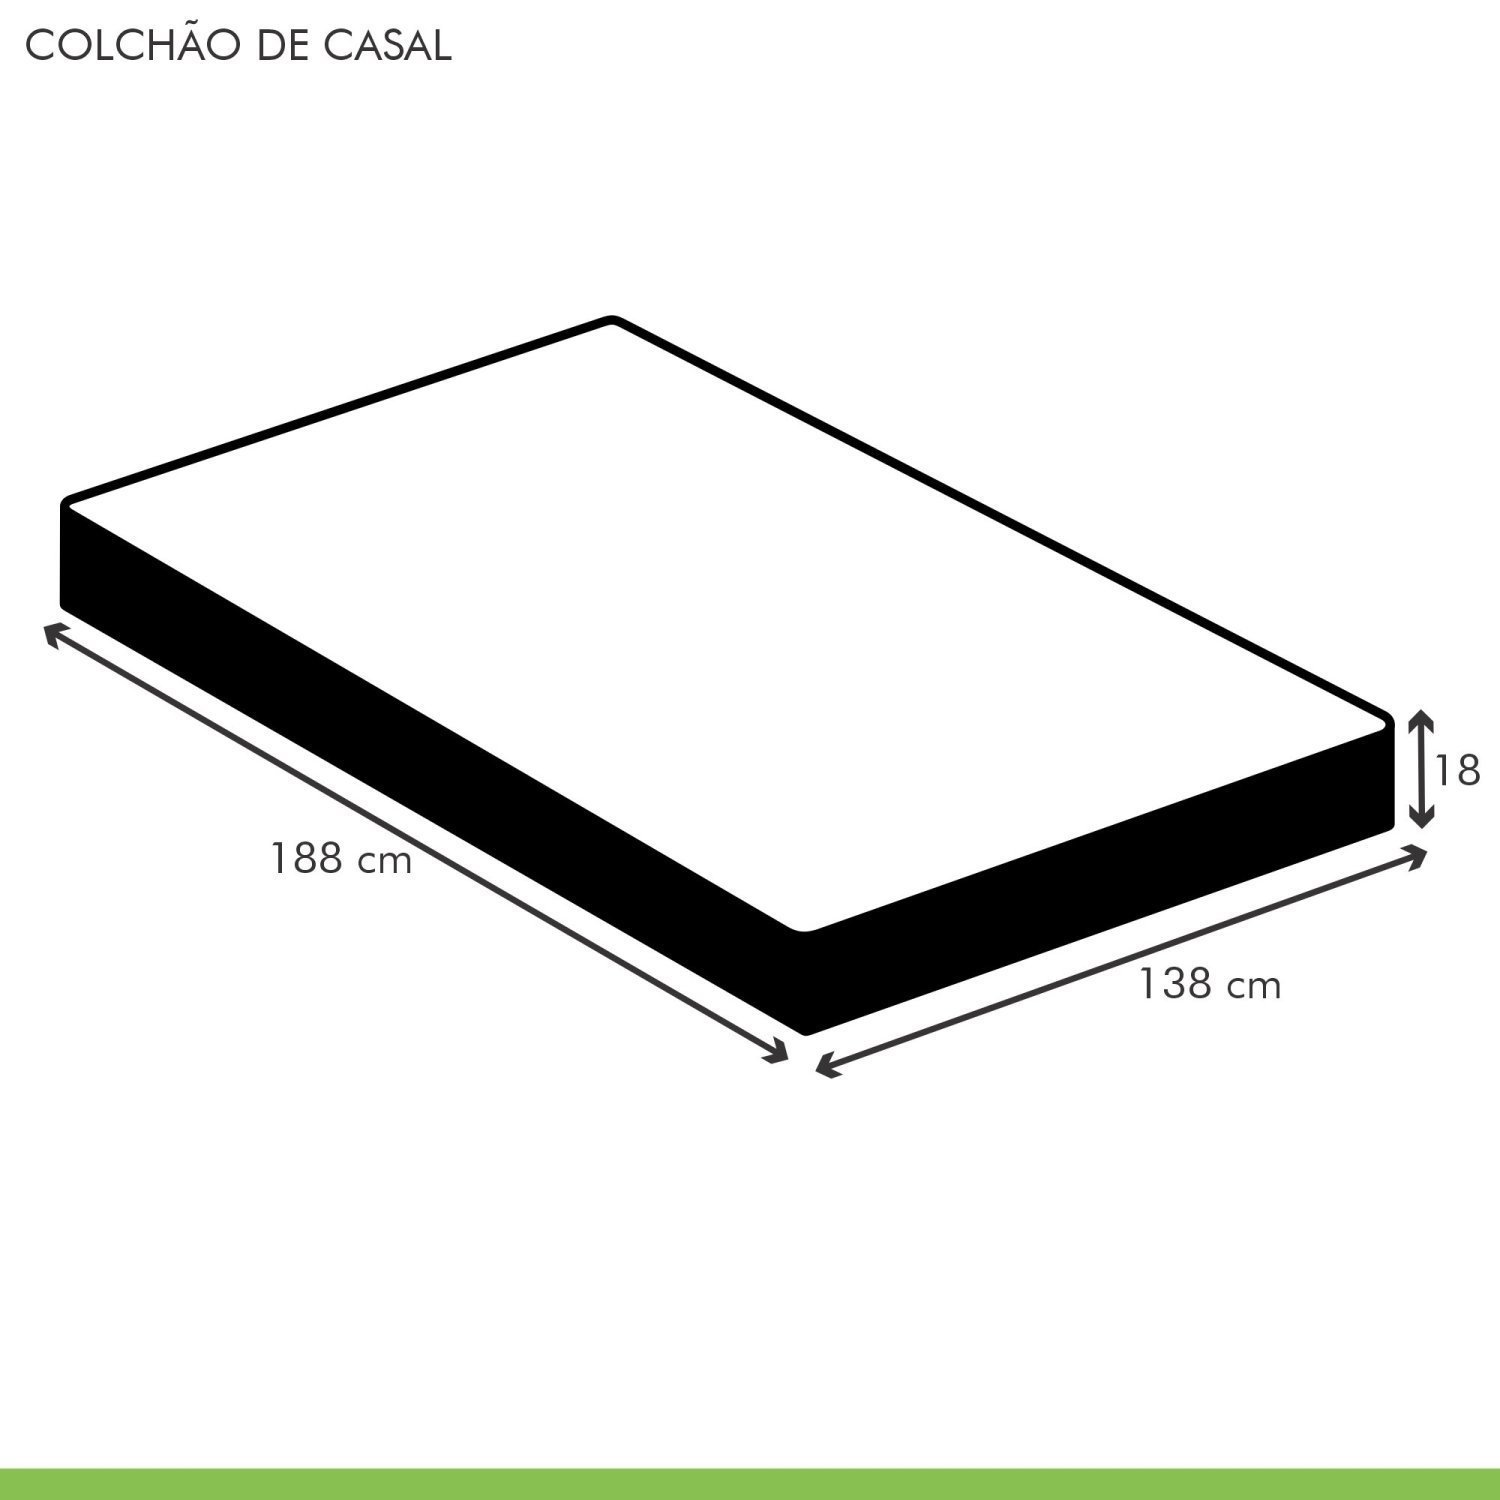 Colchão Casal  Unique D45 Plus Duoface 18x138x188cm - 6